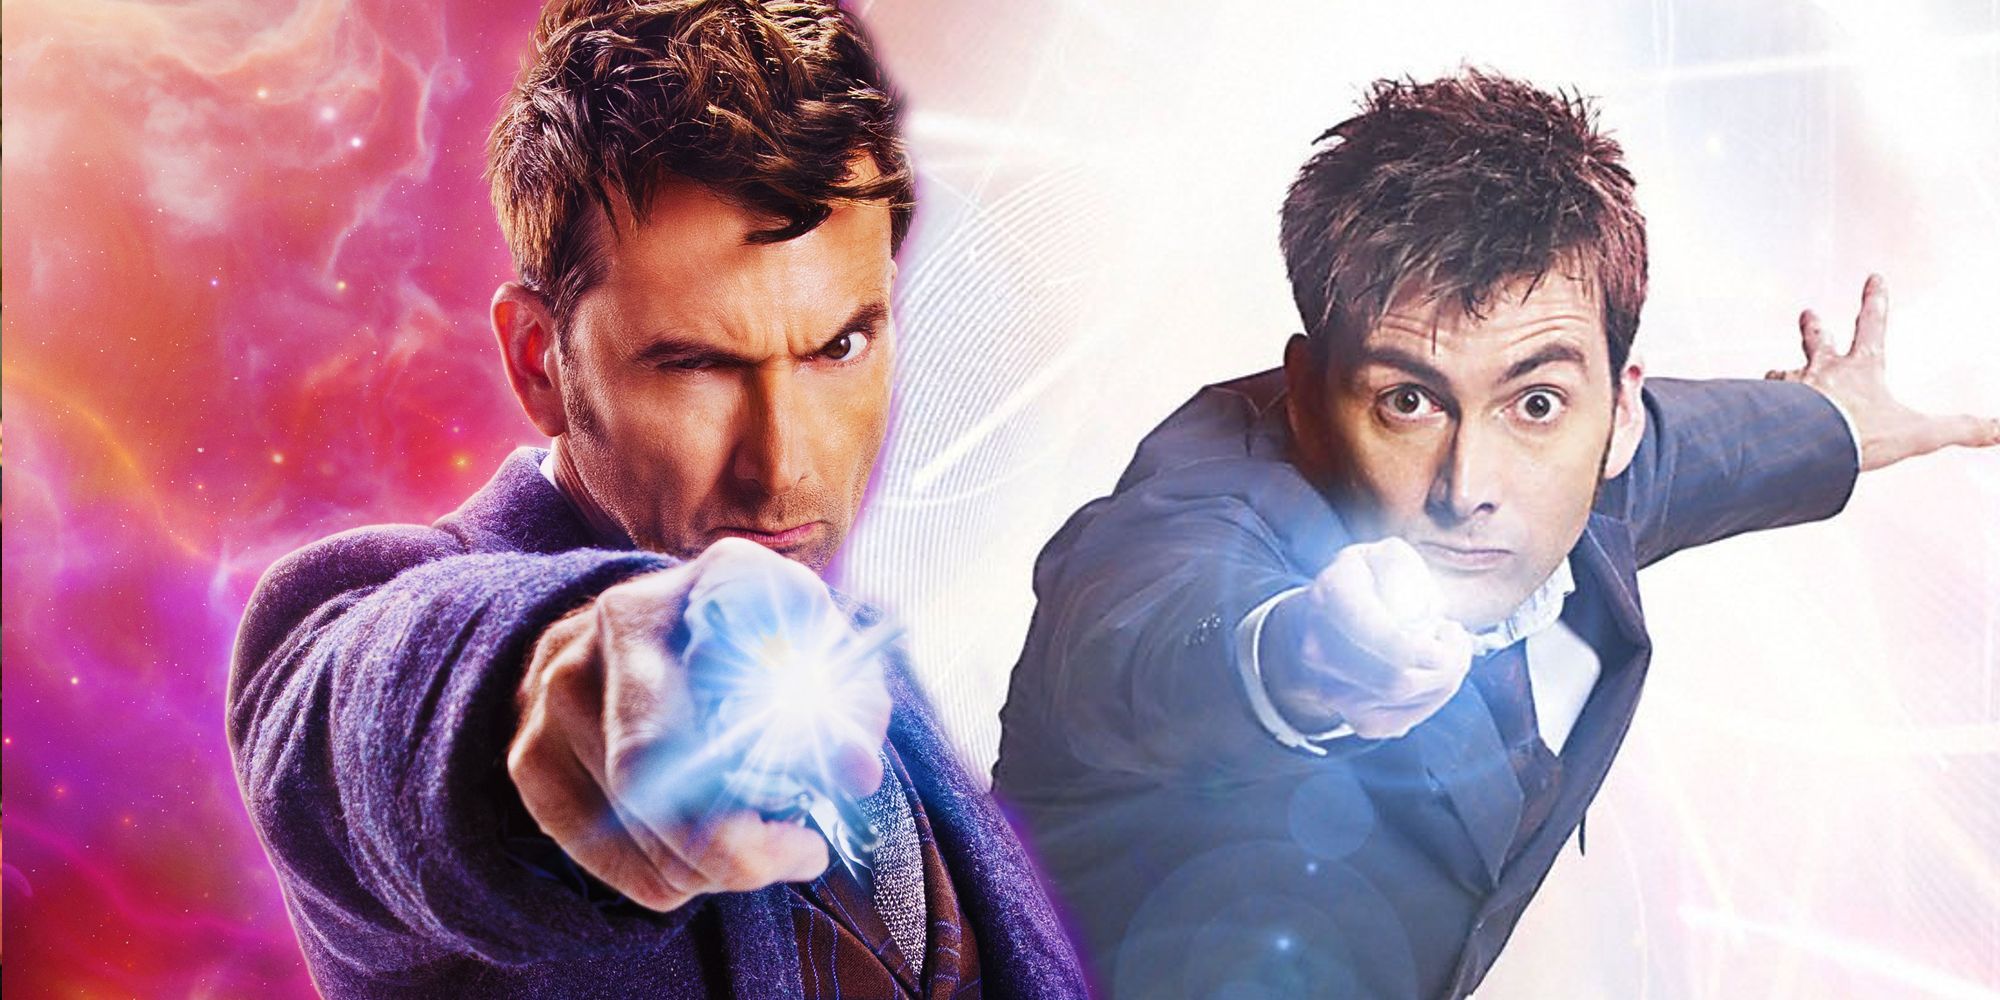 “El doctor número 14 se parece mucho al décimo”: David Tennant se burla de su misterioso médico que regresa